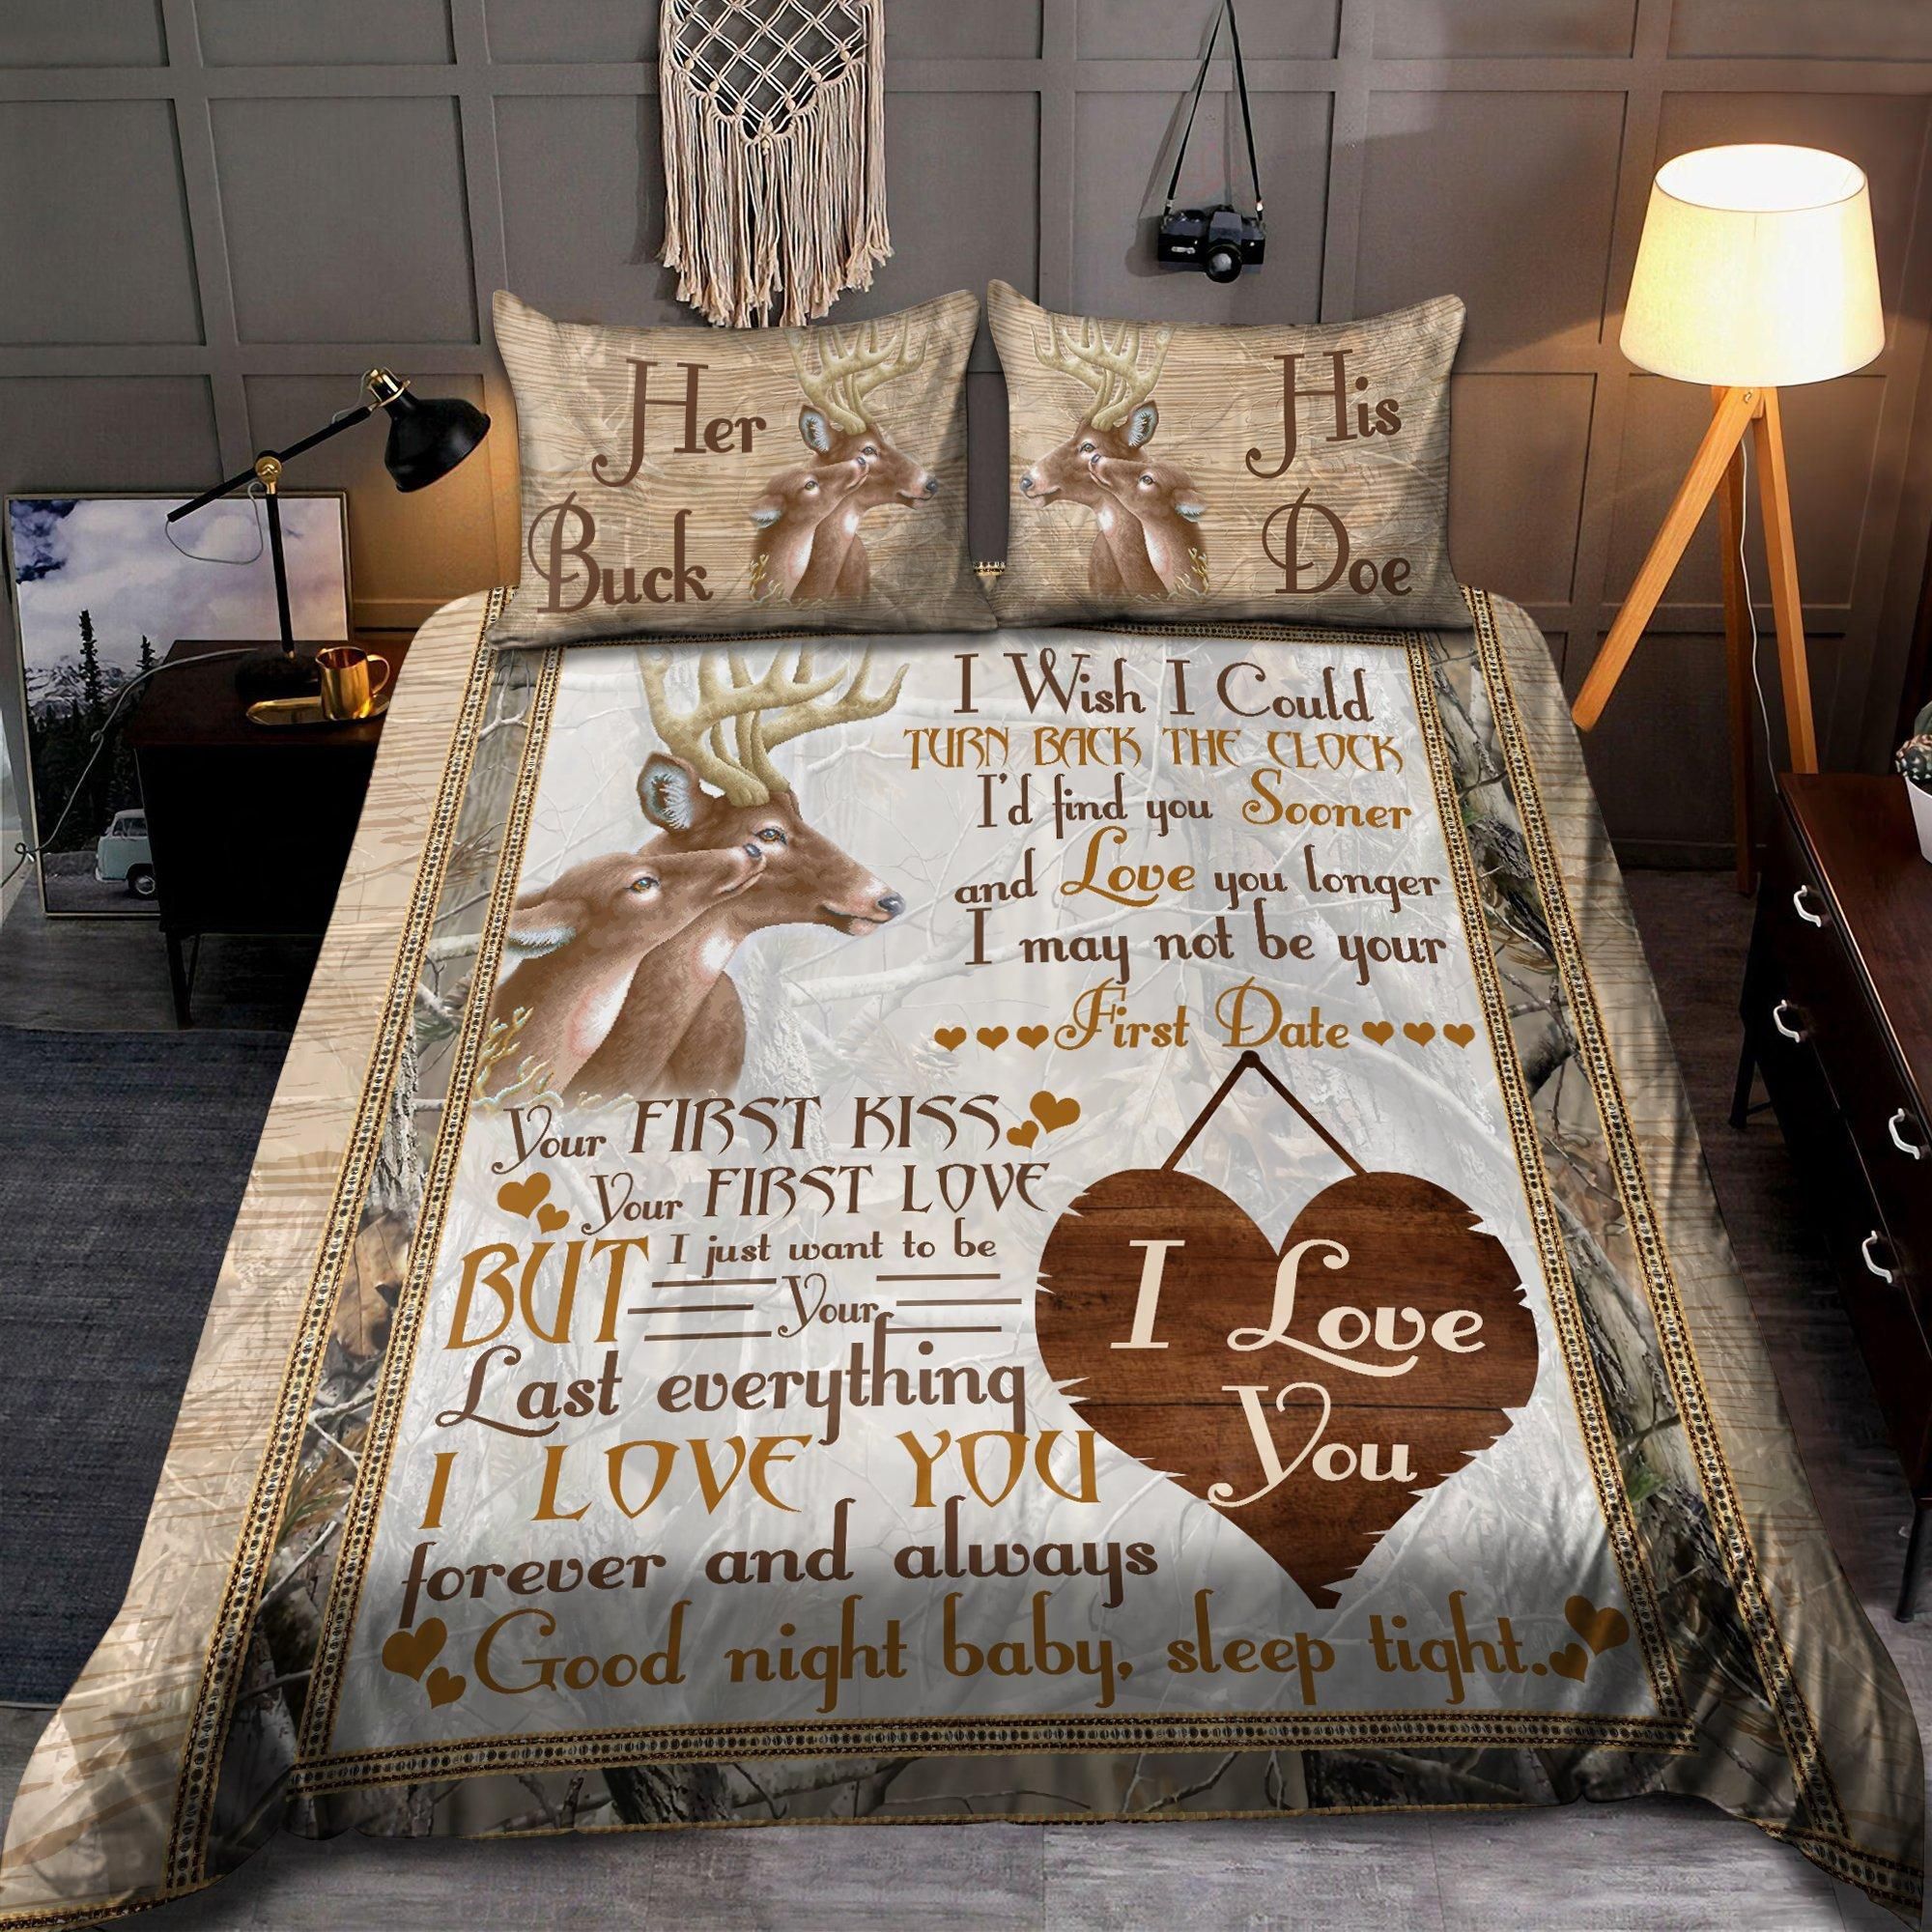 Find You Sooner And Love You Longer: Deer Lovers Bedding Set HHT2208203-TN